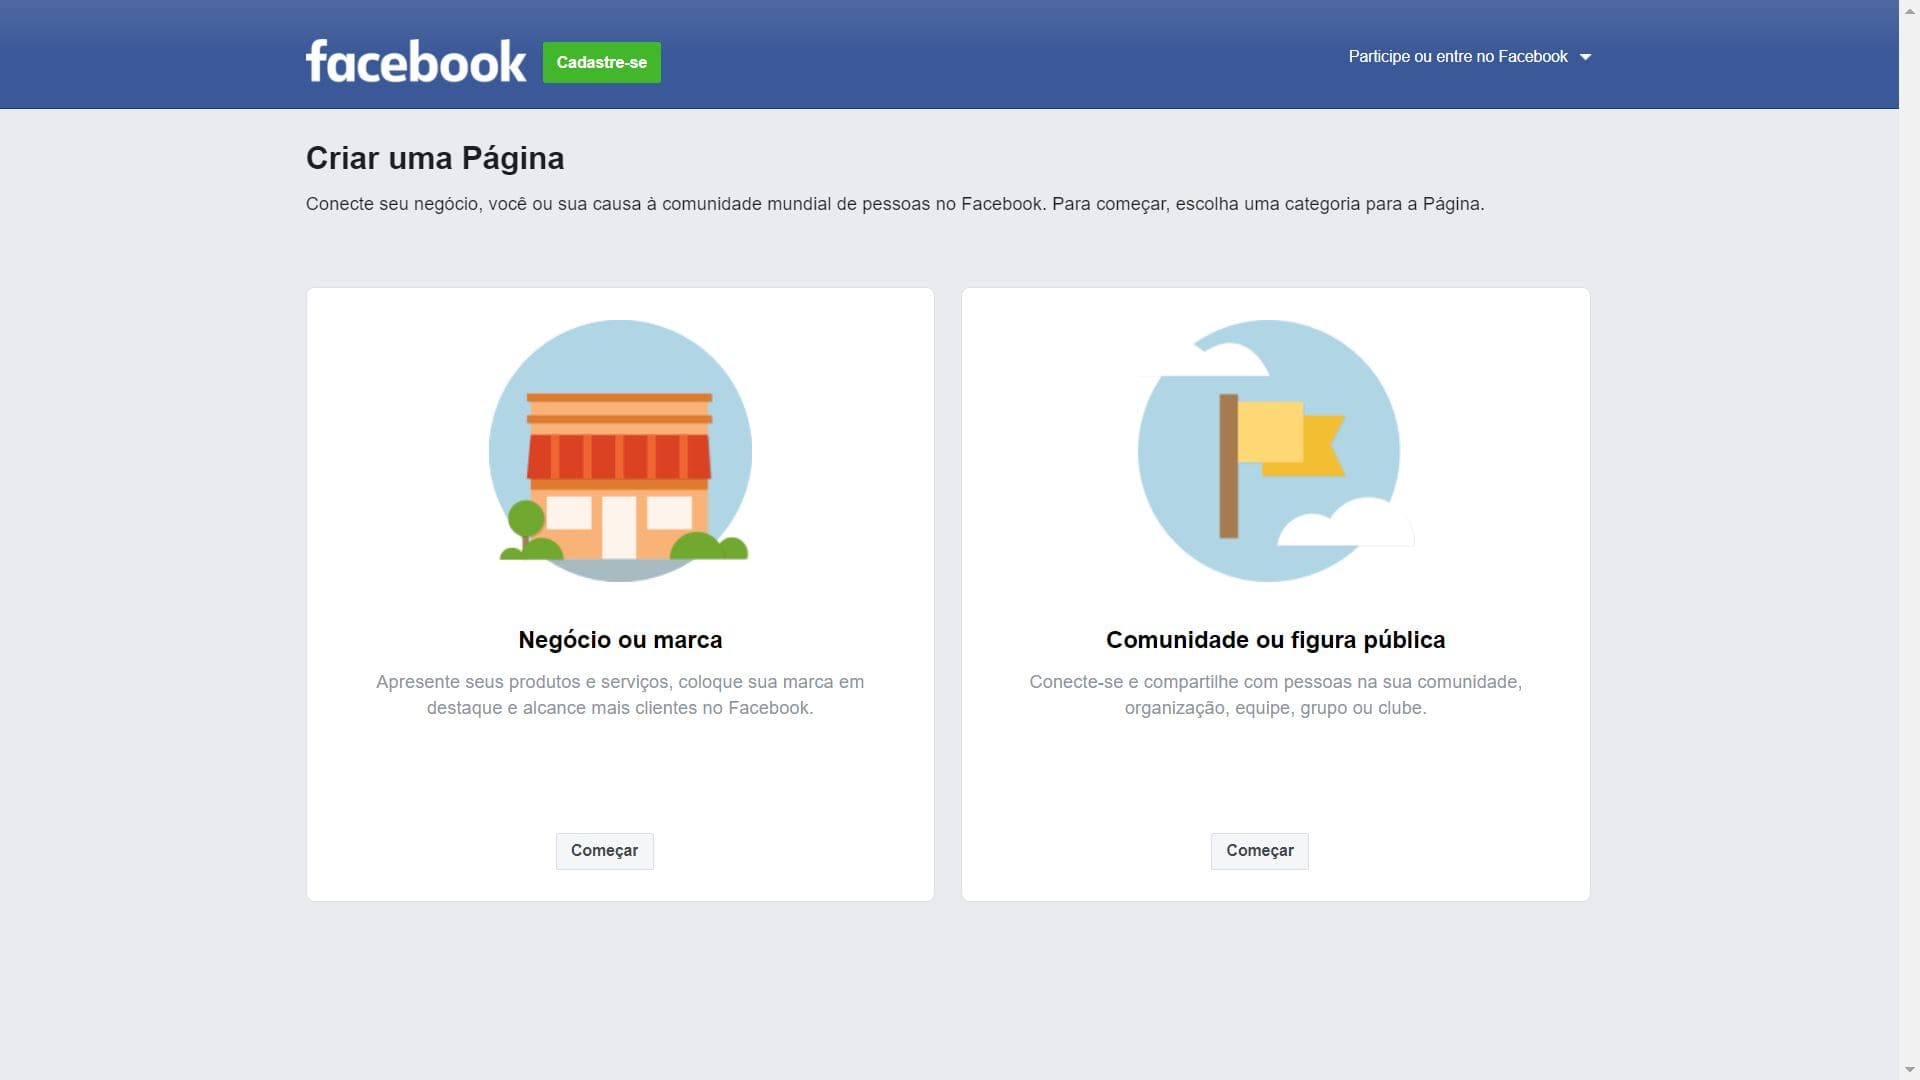 Comprar Seguidores para Facabook  Comprar Curtidas para Facebook